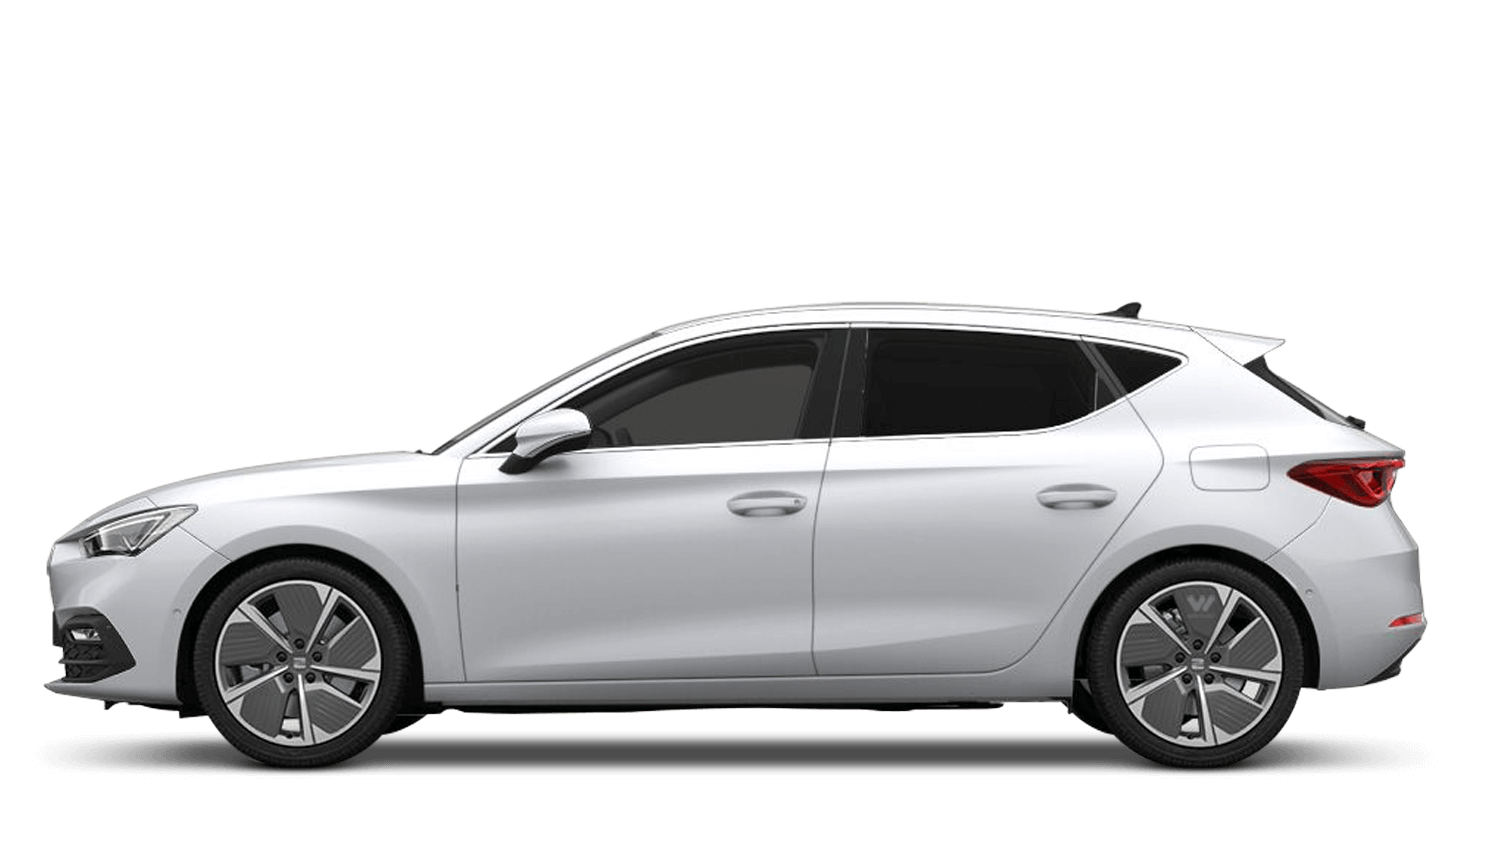 Nevada White (Metallic) SEAT Leon e-Hybrid (PHEV)